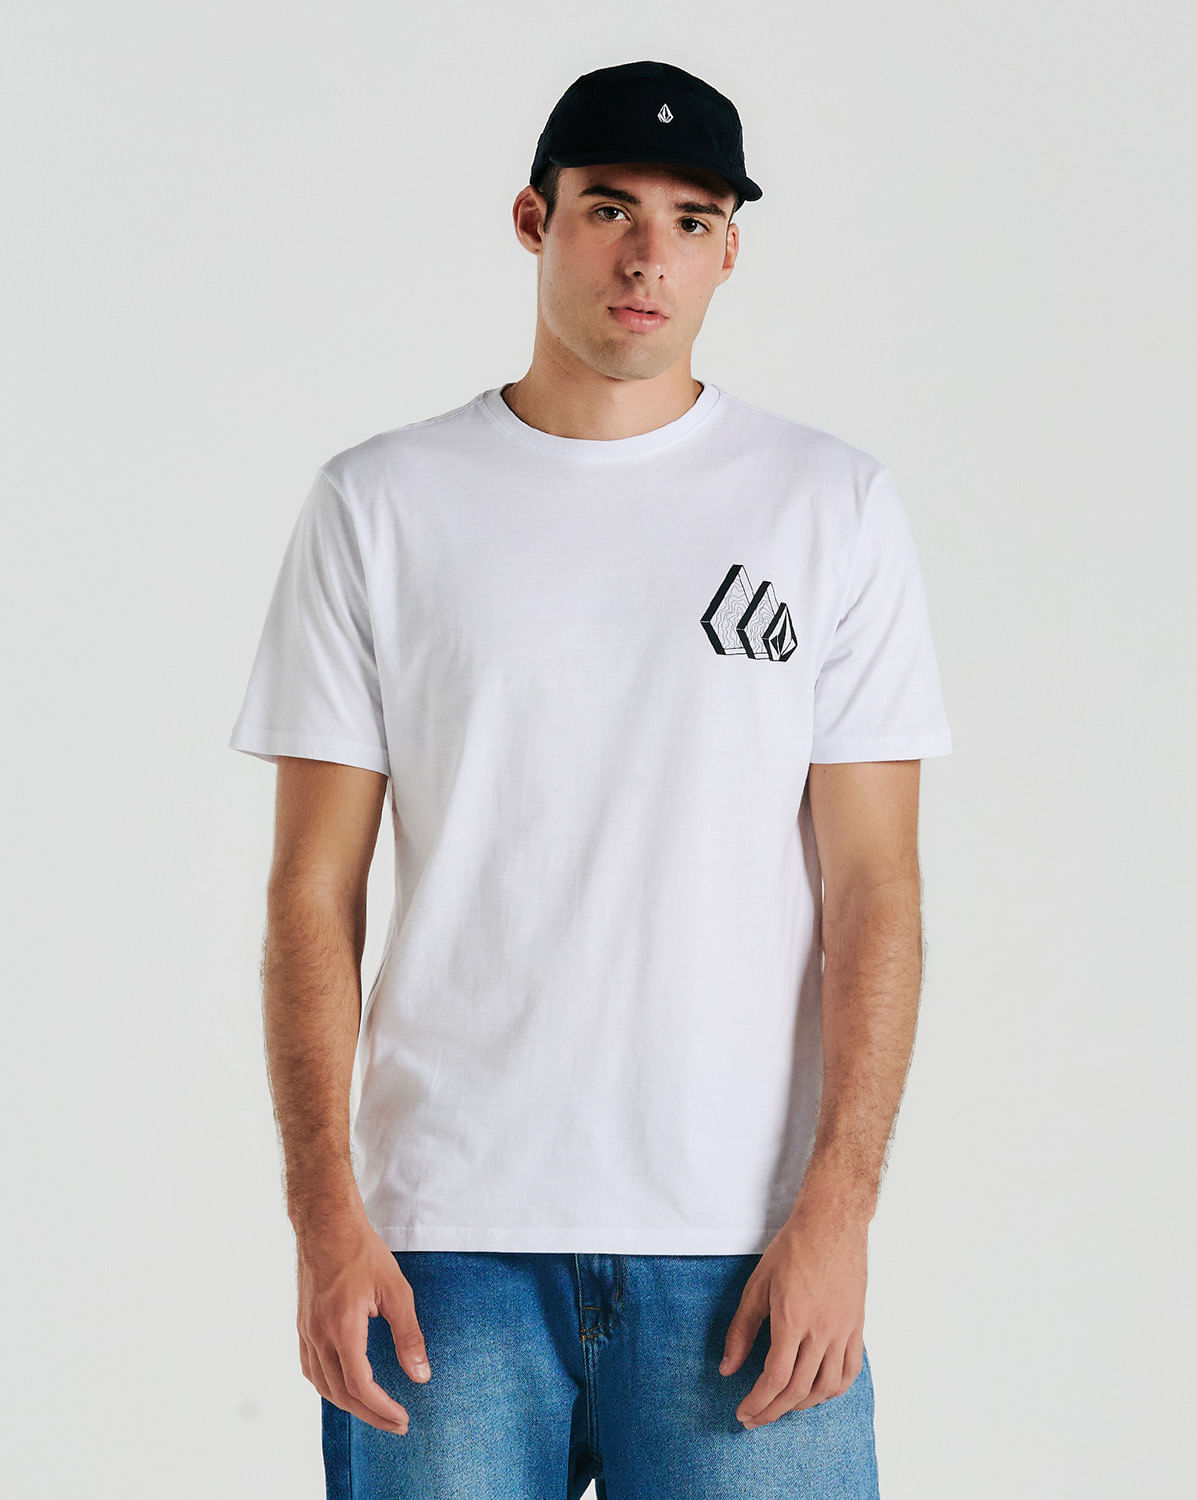 Camiseta Volcom Repeater Branca